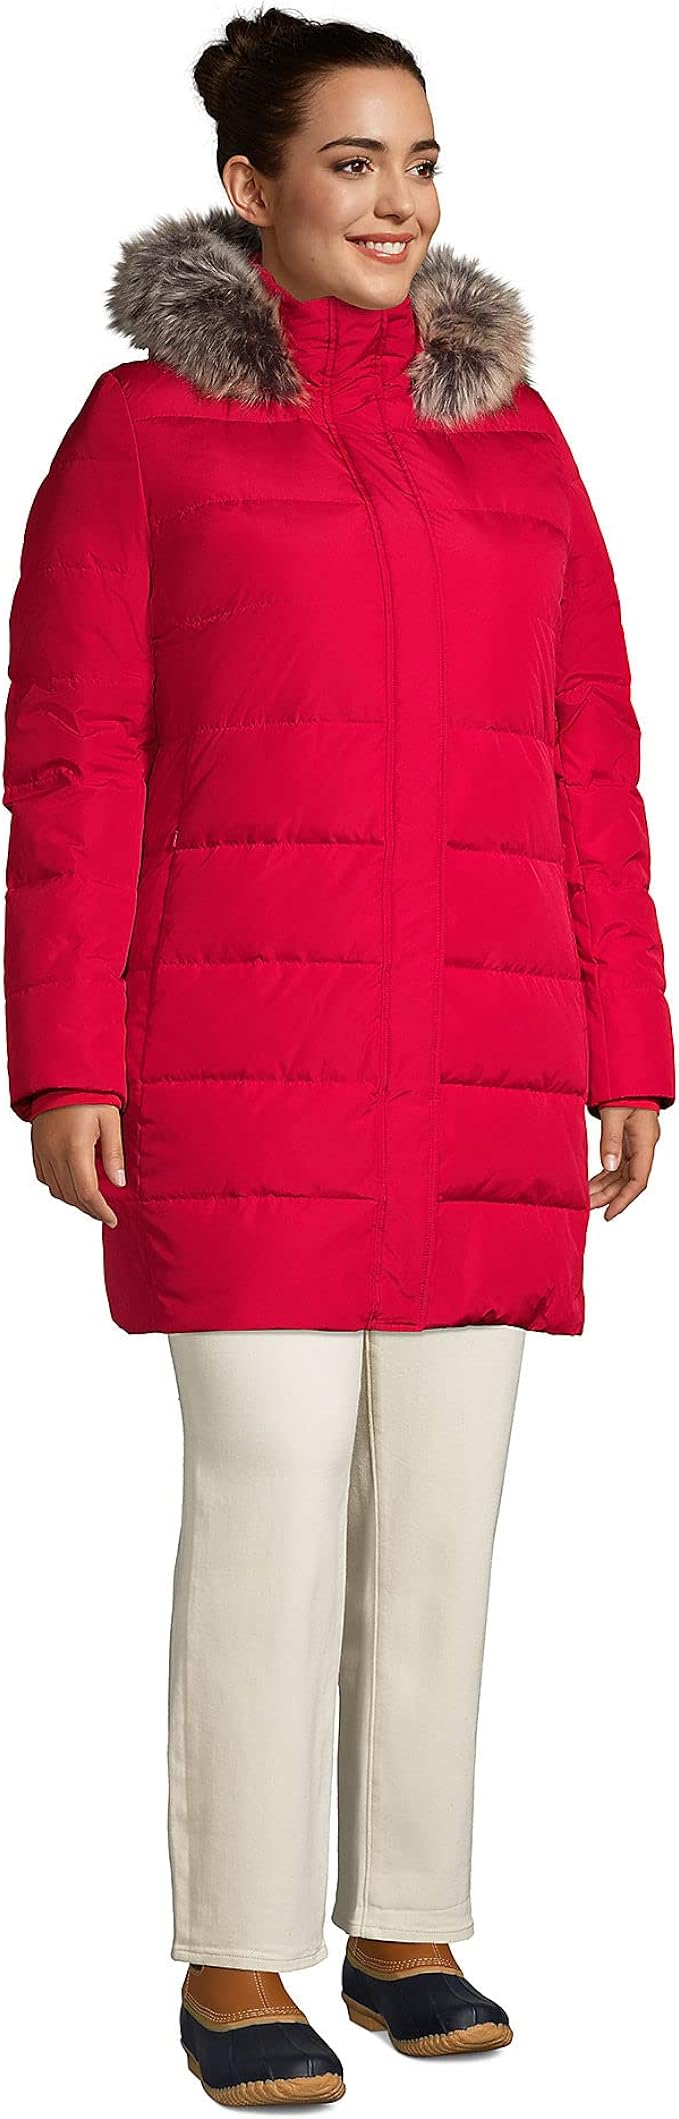 Lands' End Womens Down Winter Coat Rich Red Regular